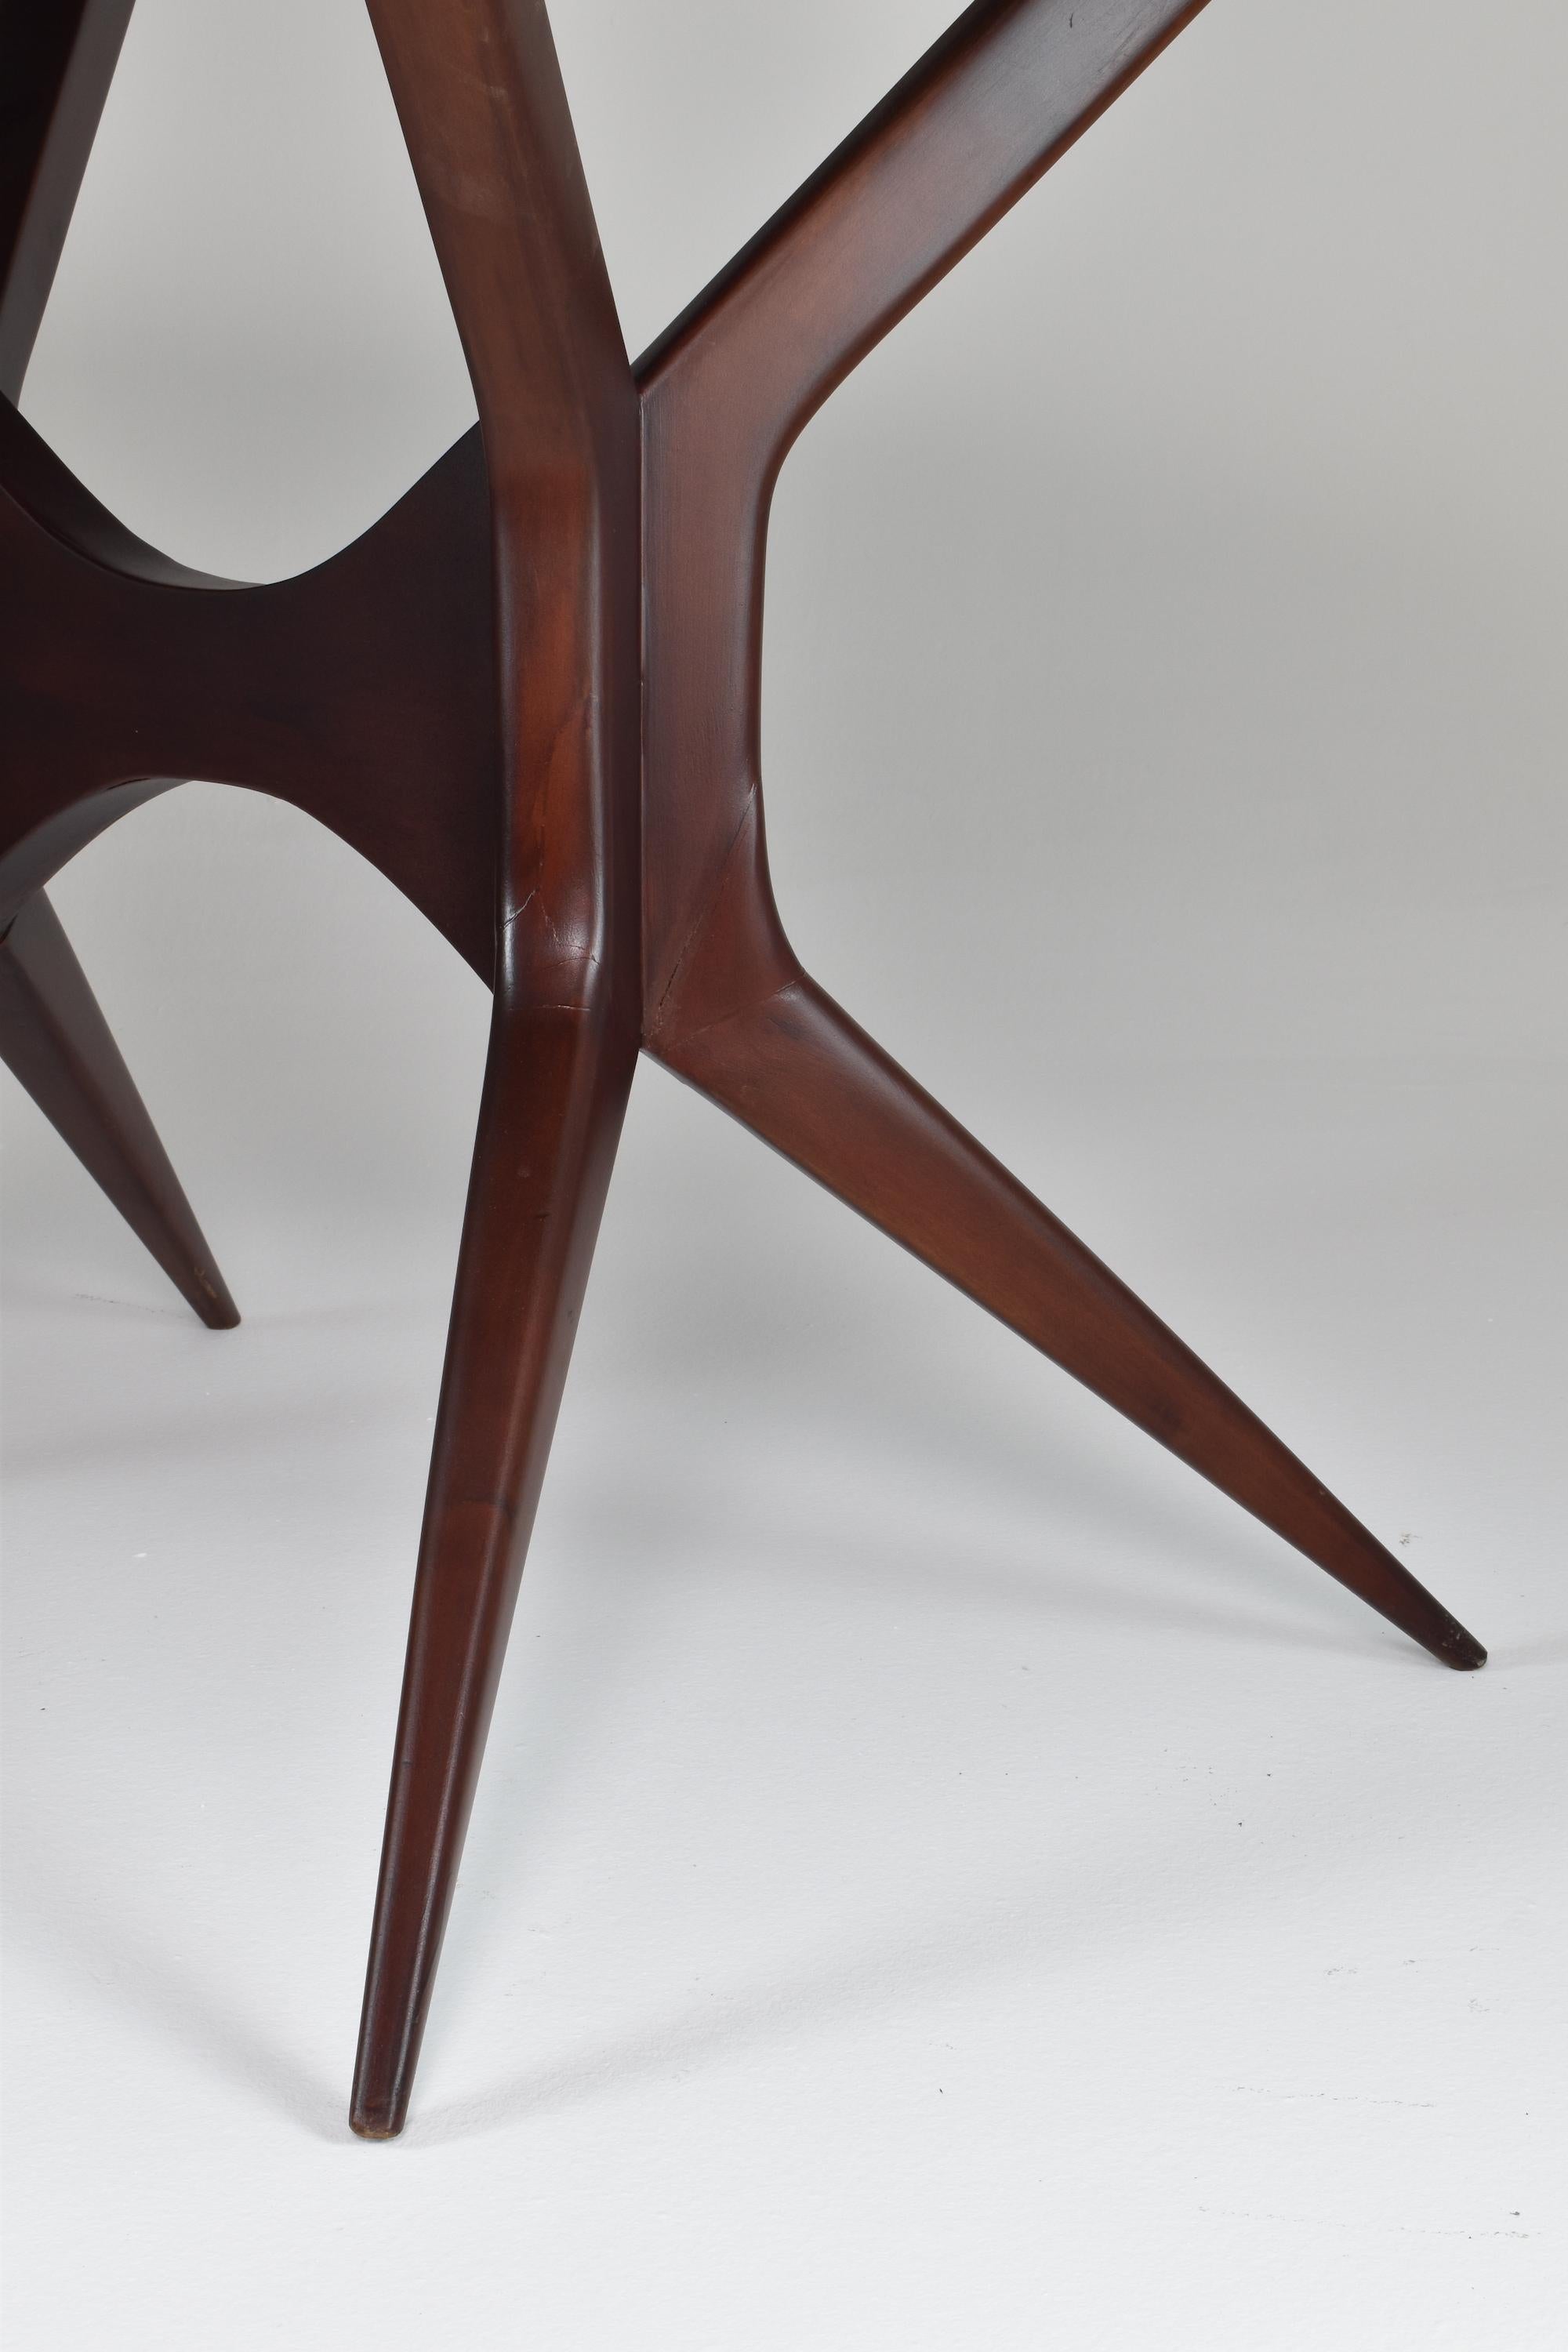 Oak 1950's Italian Oval Table Ico Parisi Style